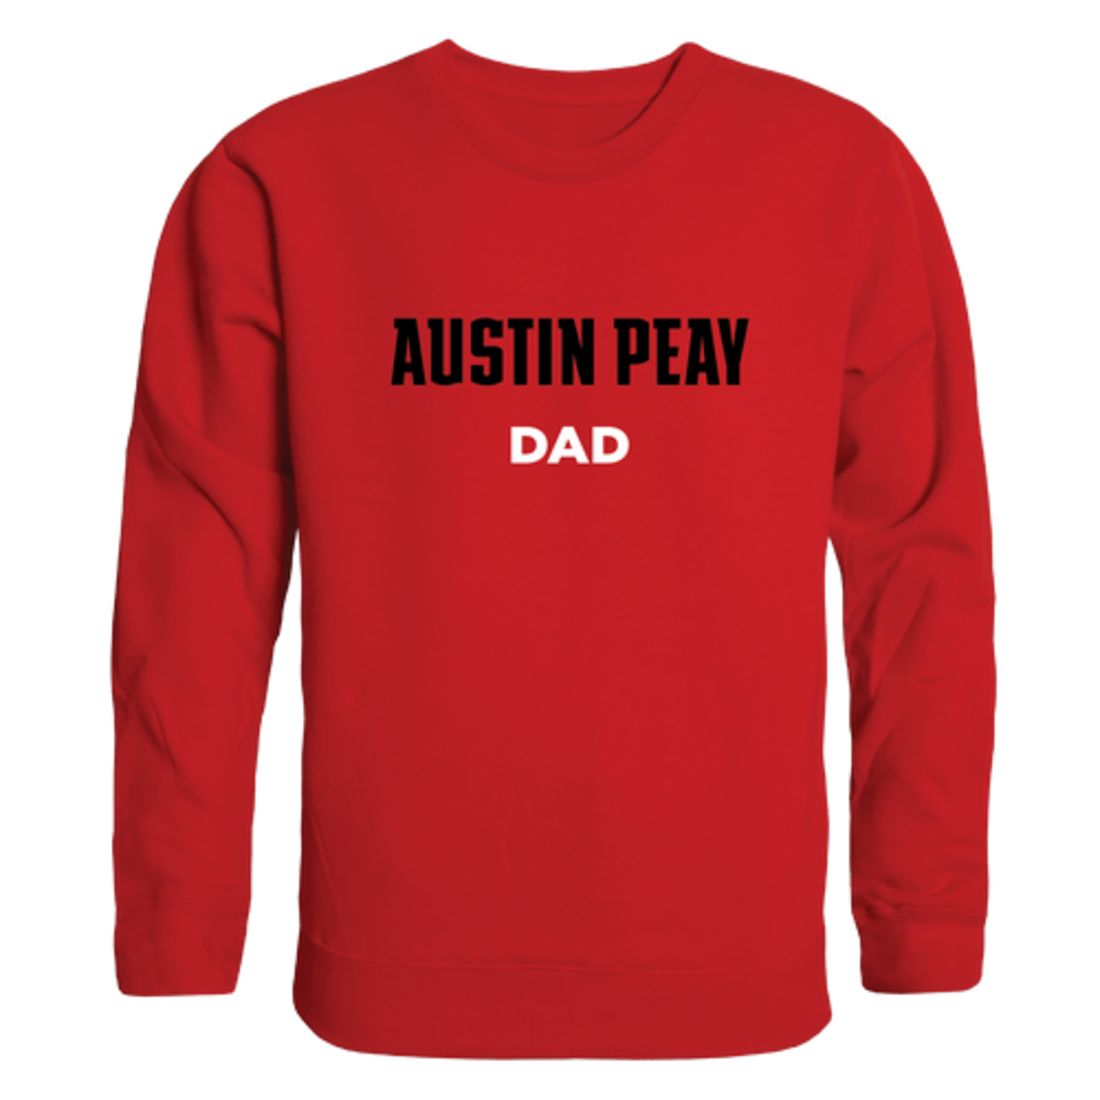 APSU Austin Peay State University Governors Dad Fleece Crewneck Pullover Sweatshirt Heather Grey-Campus-Wardrobe